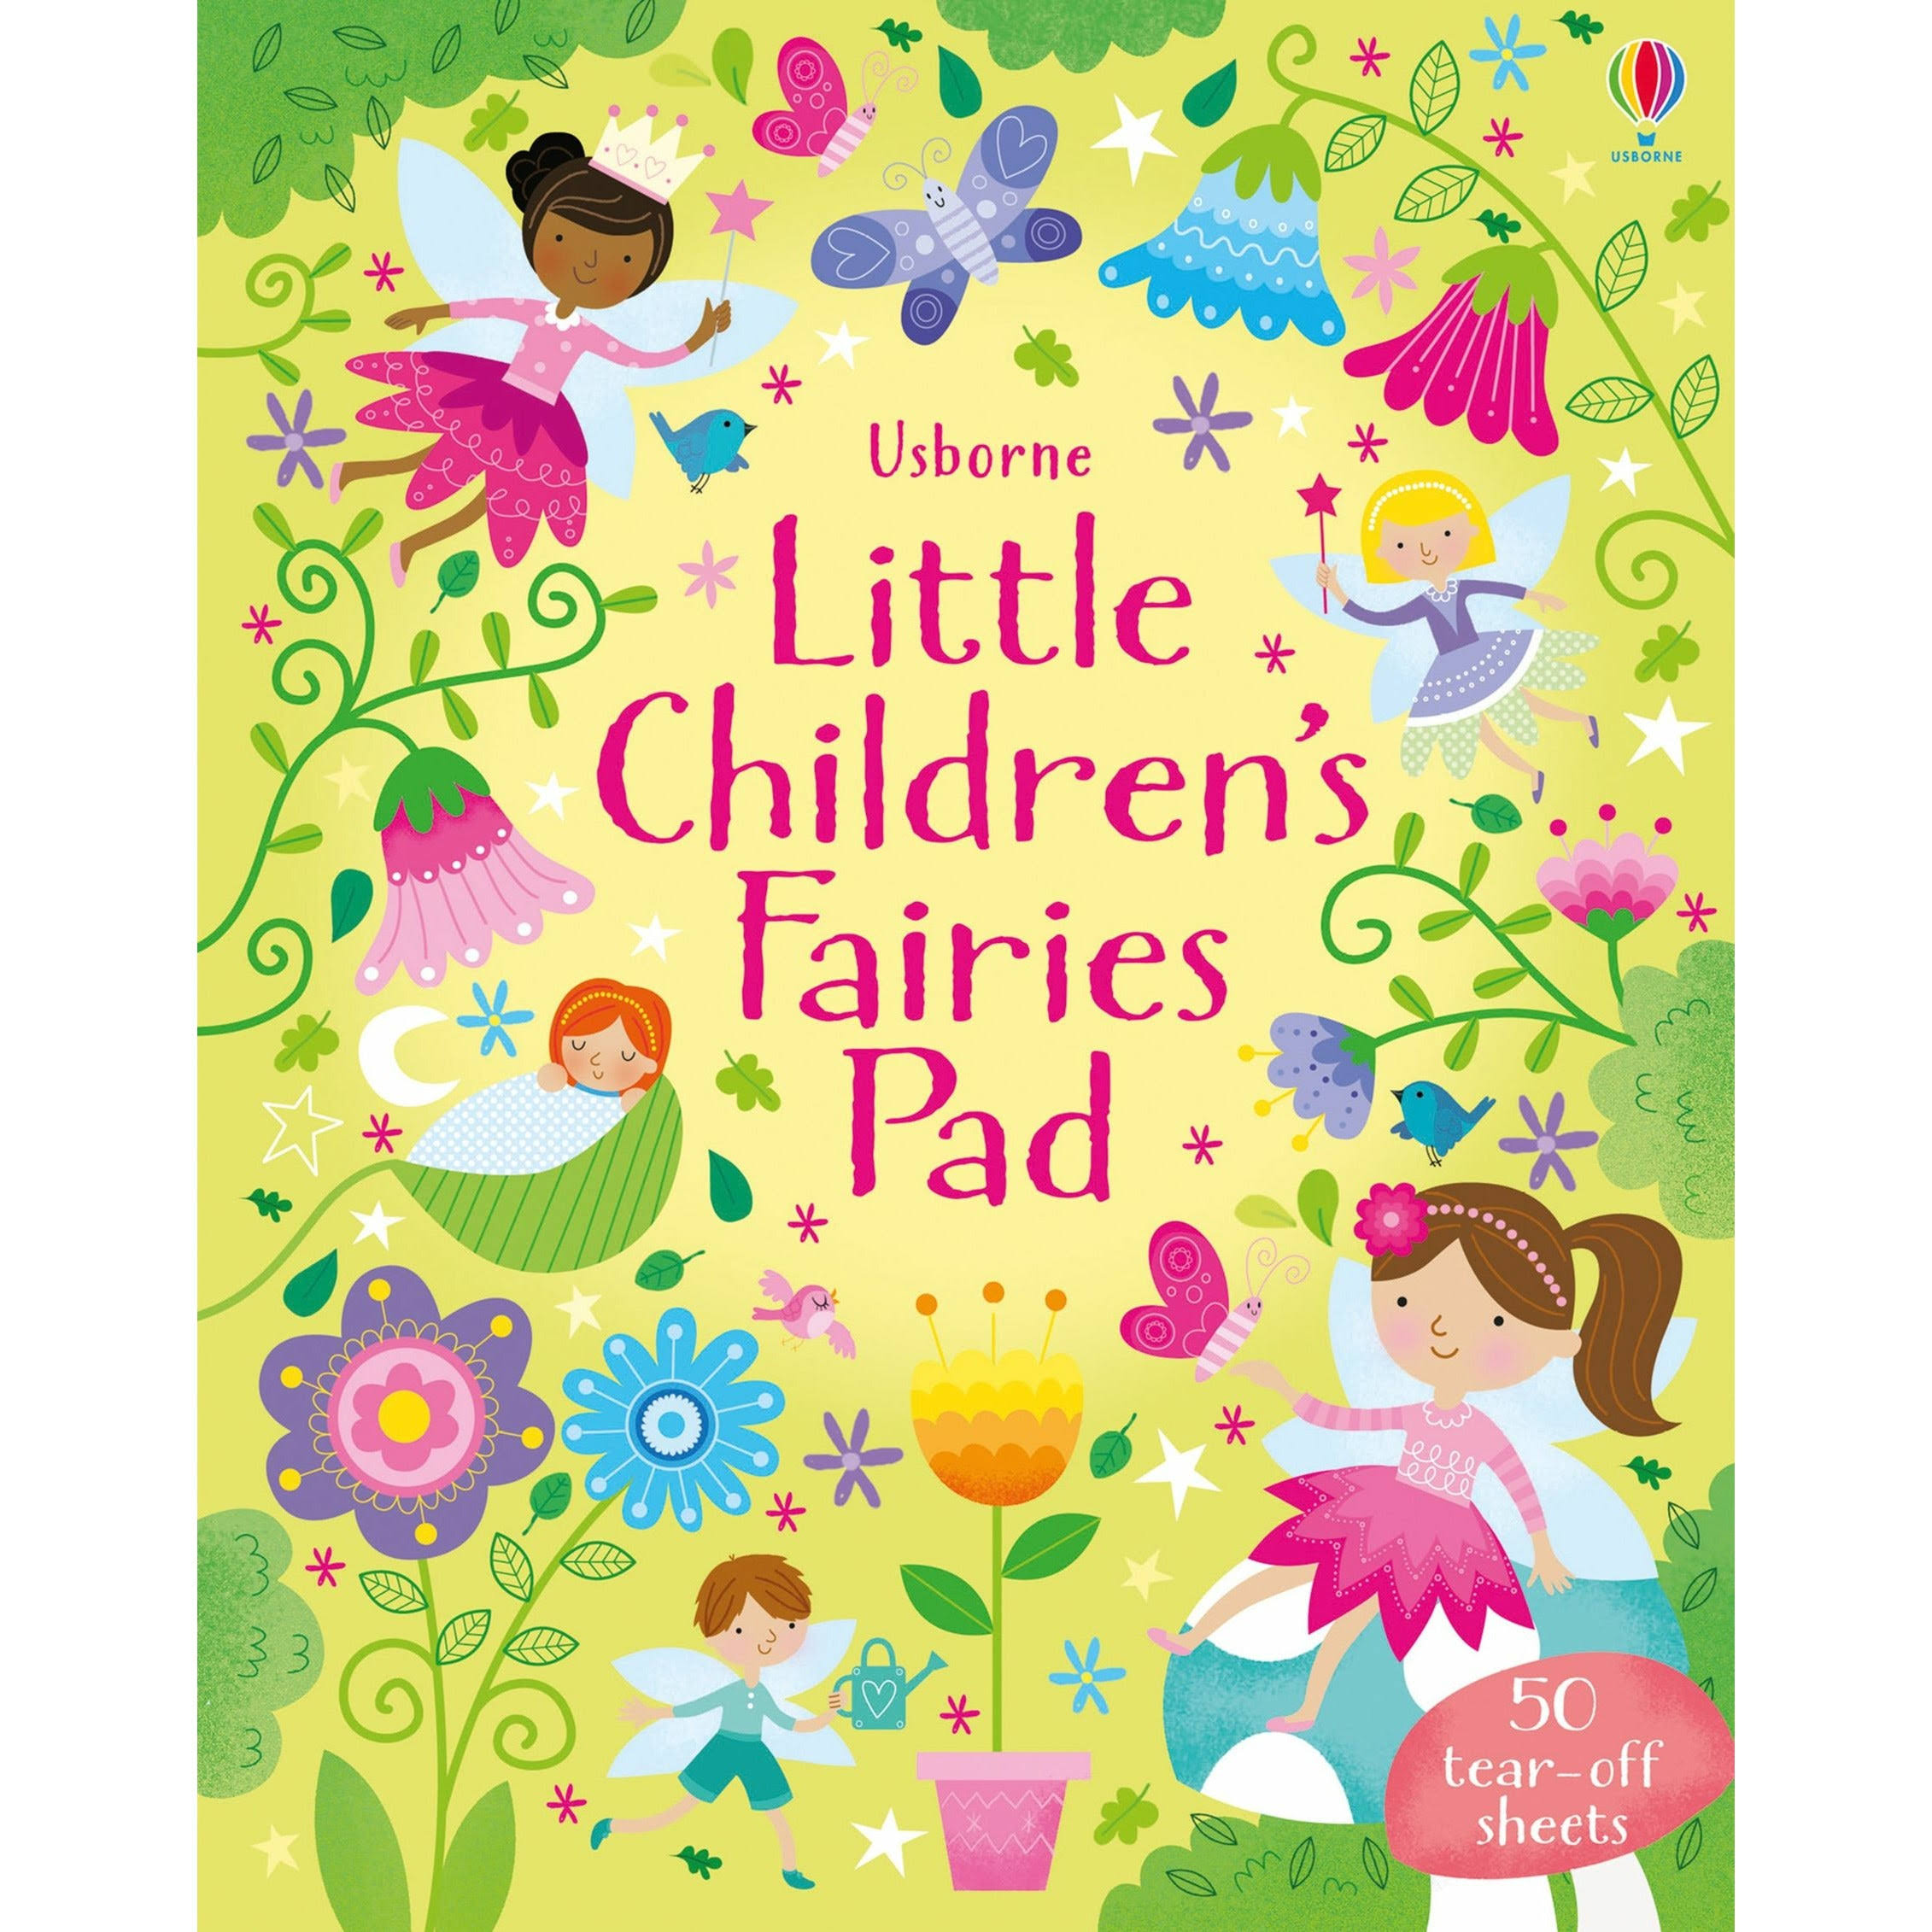 Little Childrens Fairies Pad [Book]